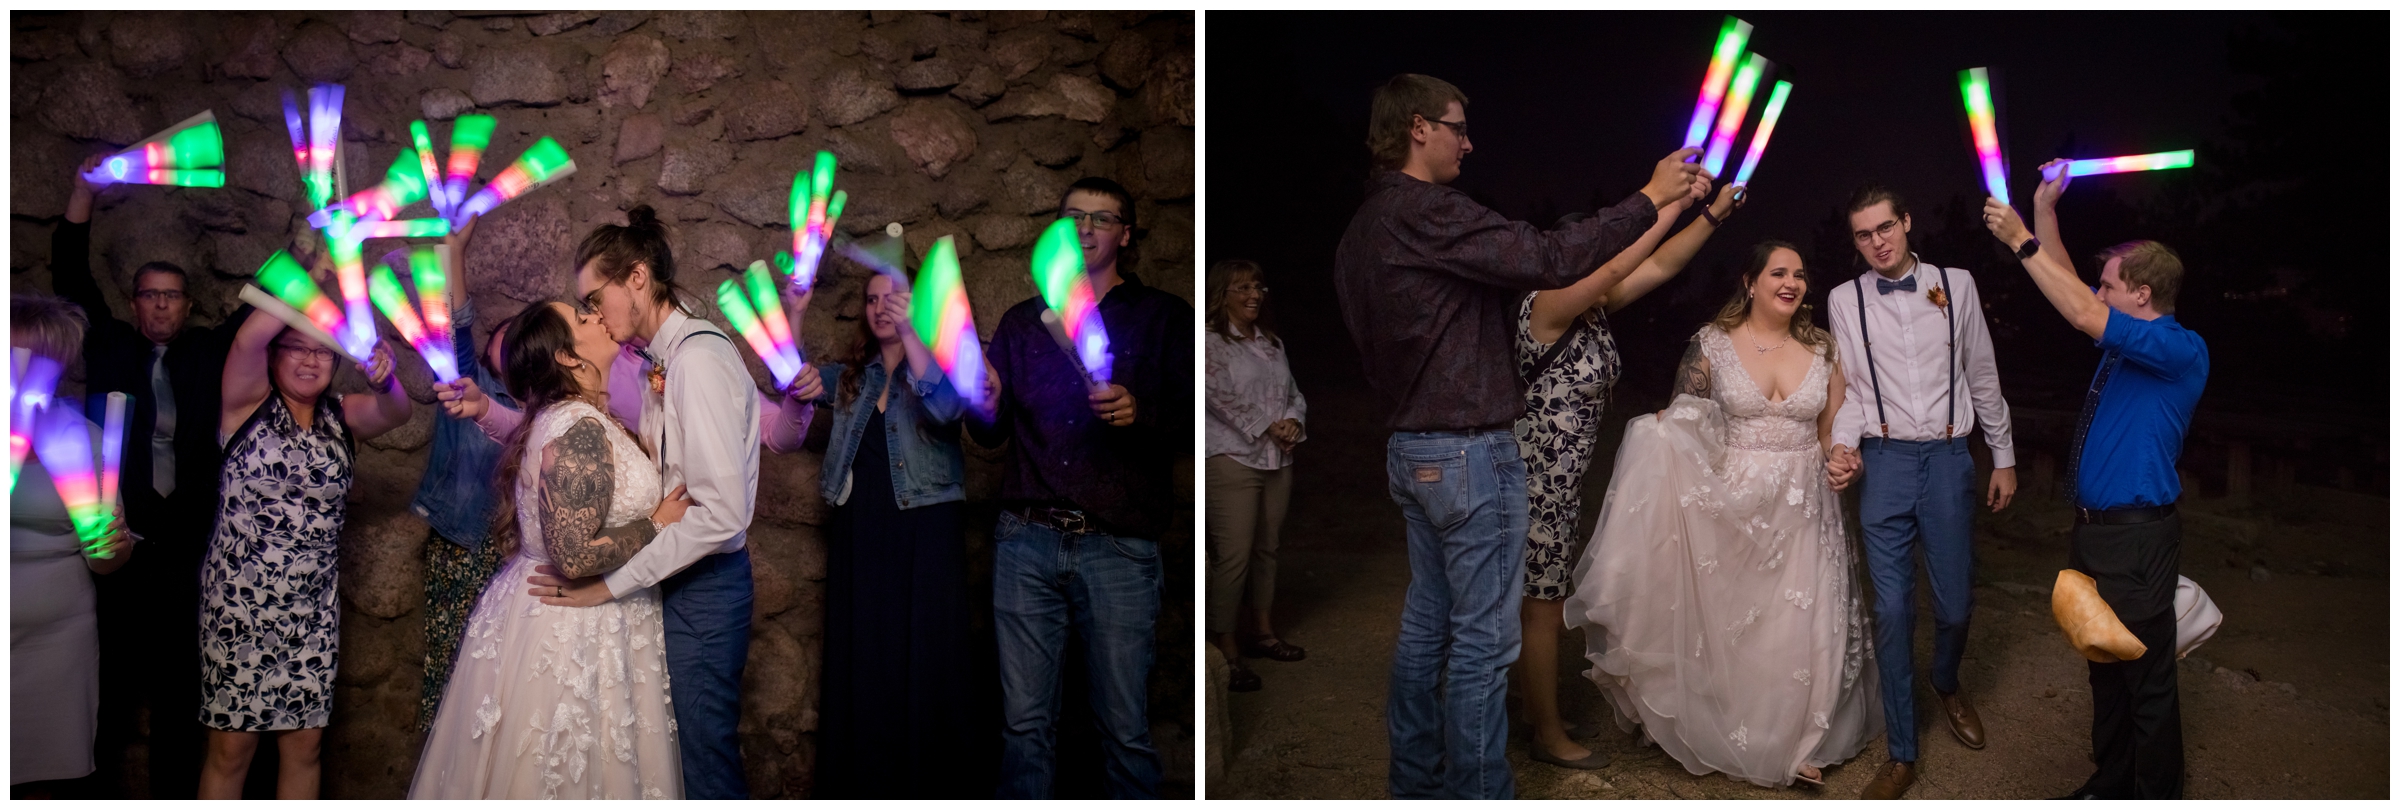 glow stick baton wedding exit in Boulder Colorado 